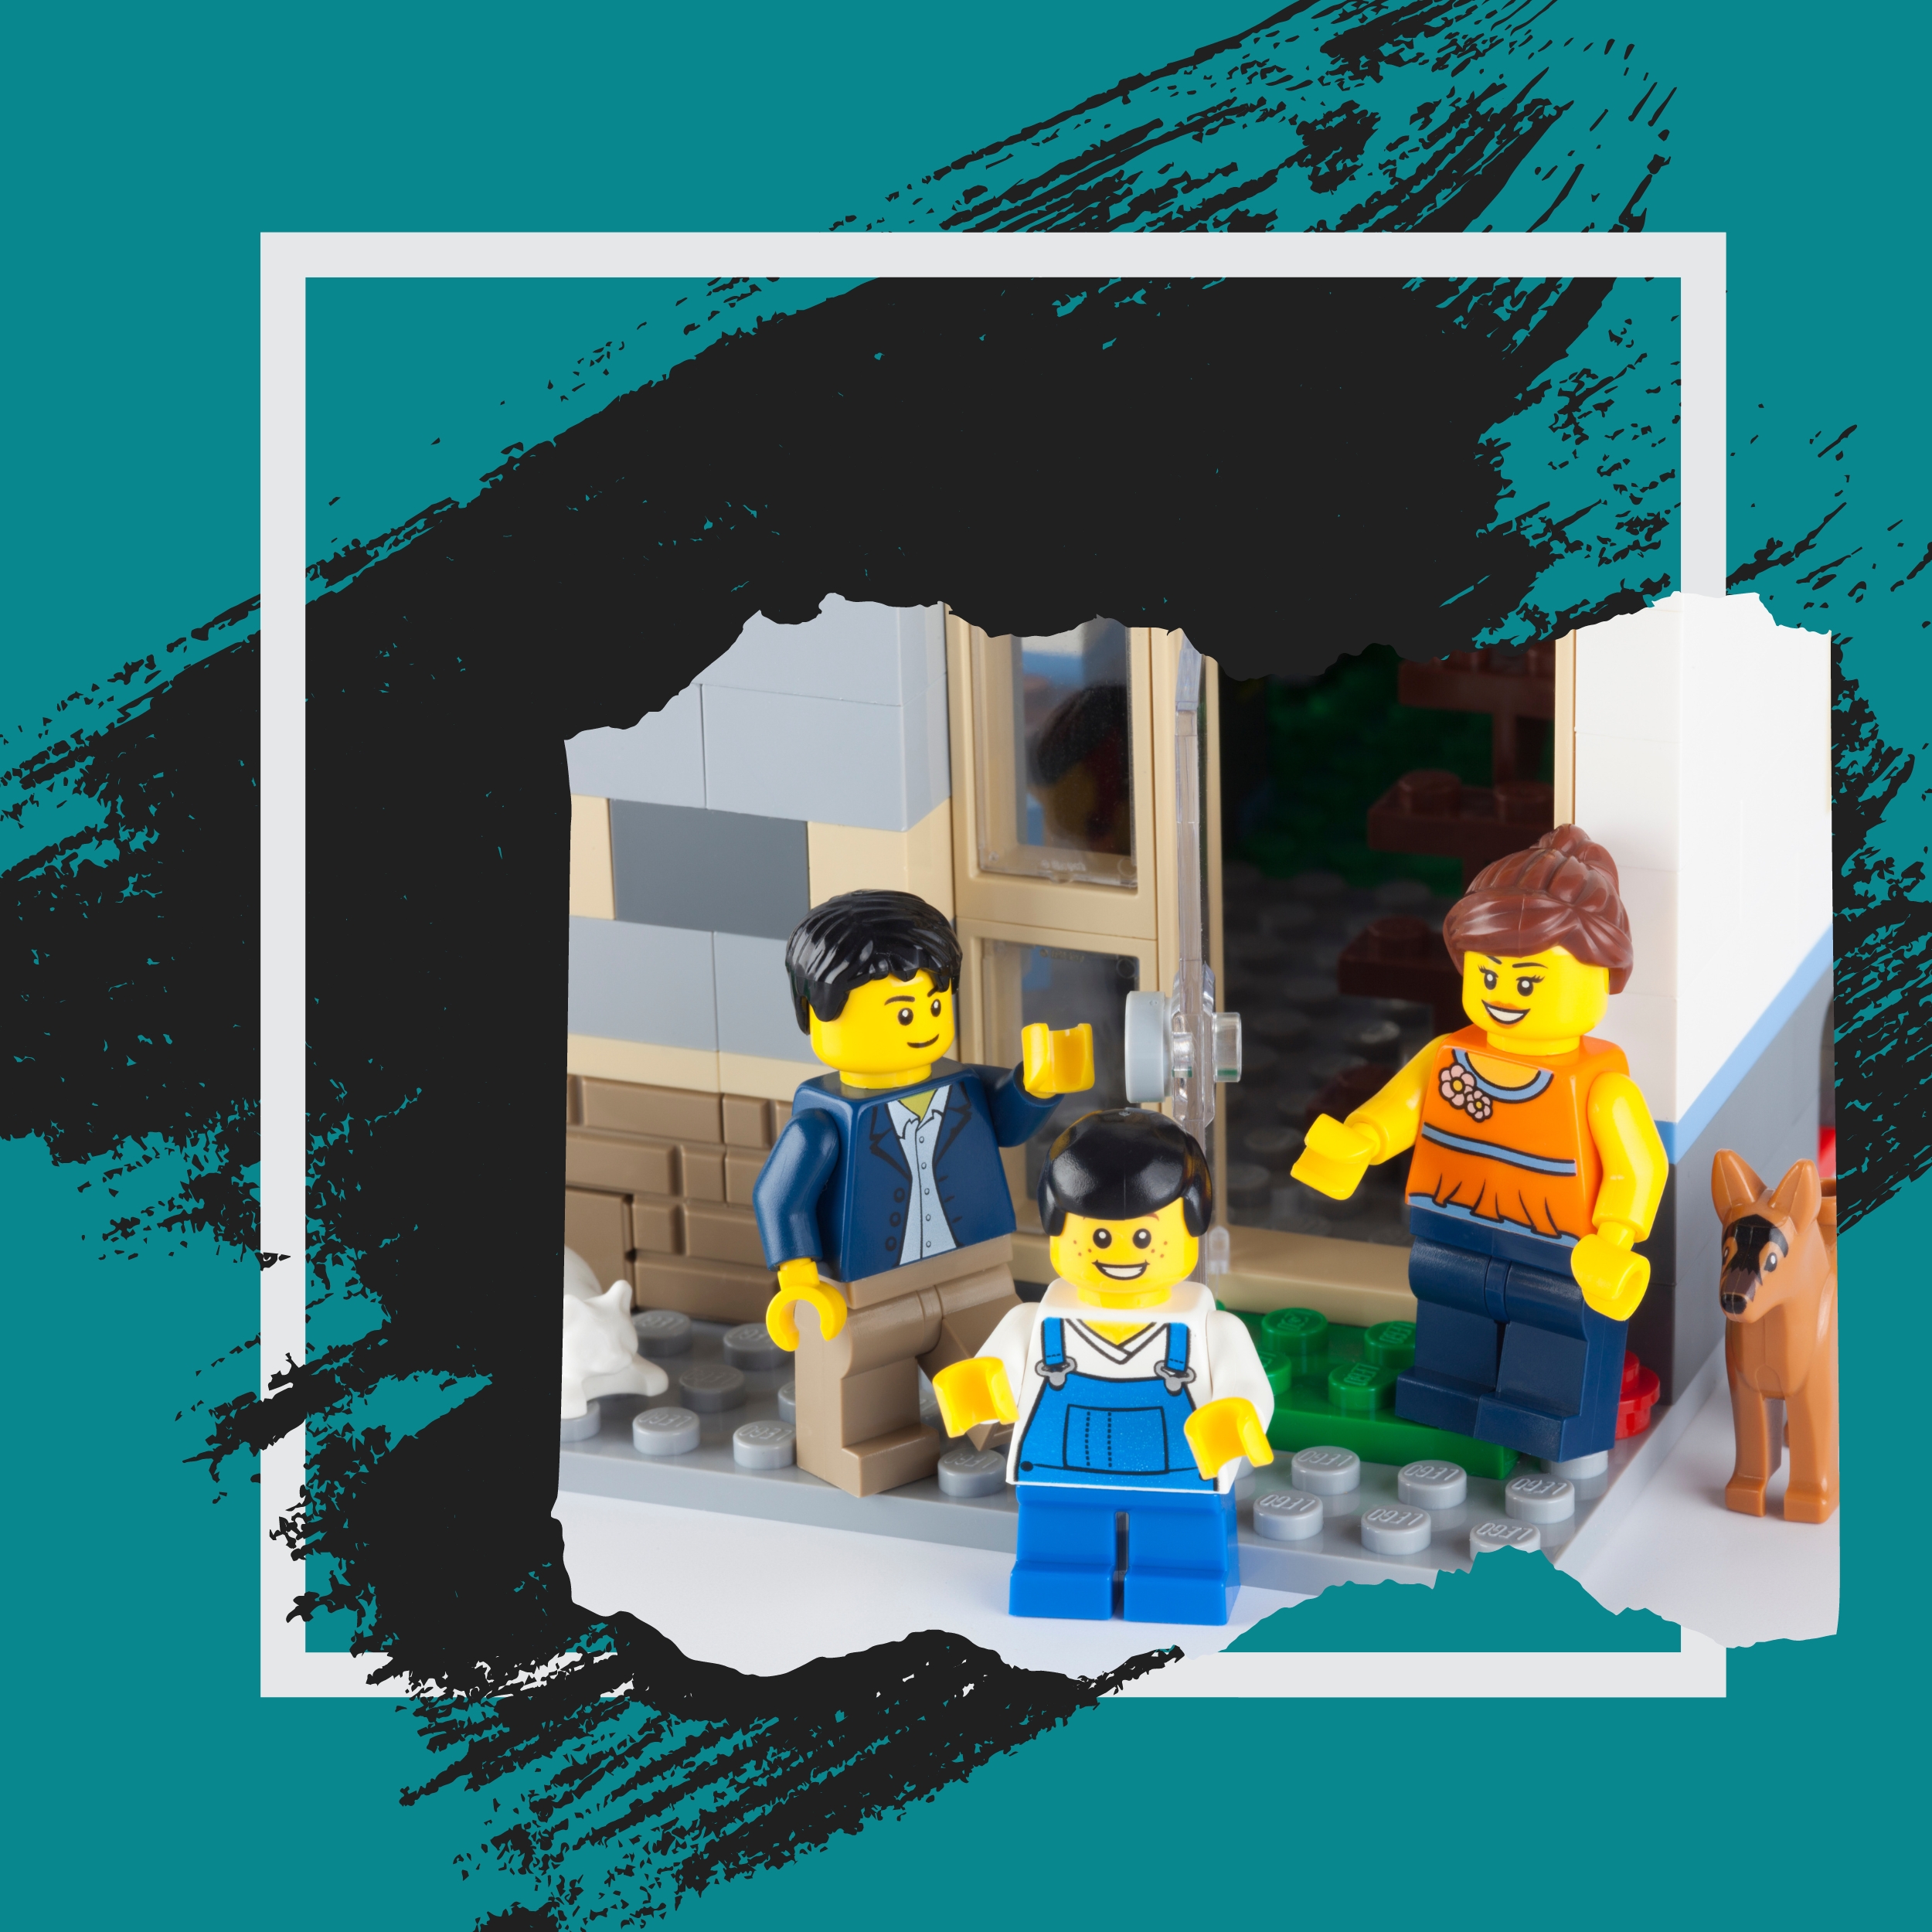 Lego Mini-fig kids standing in doorway with Lego Teacher